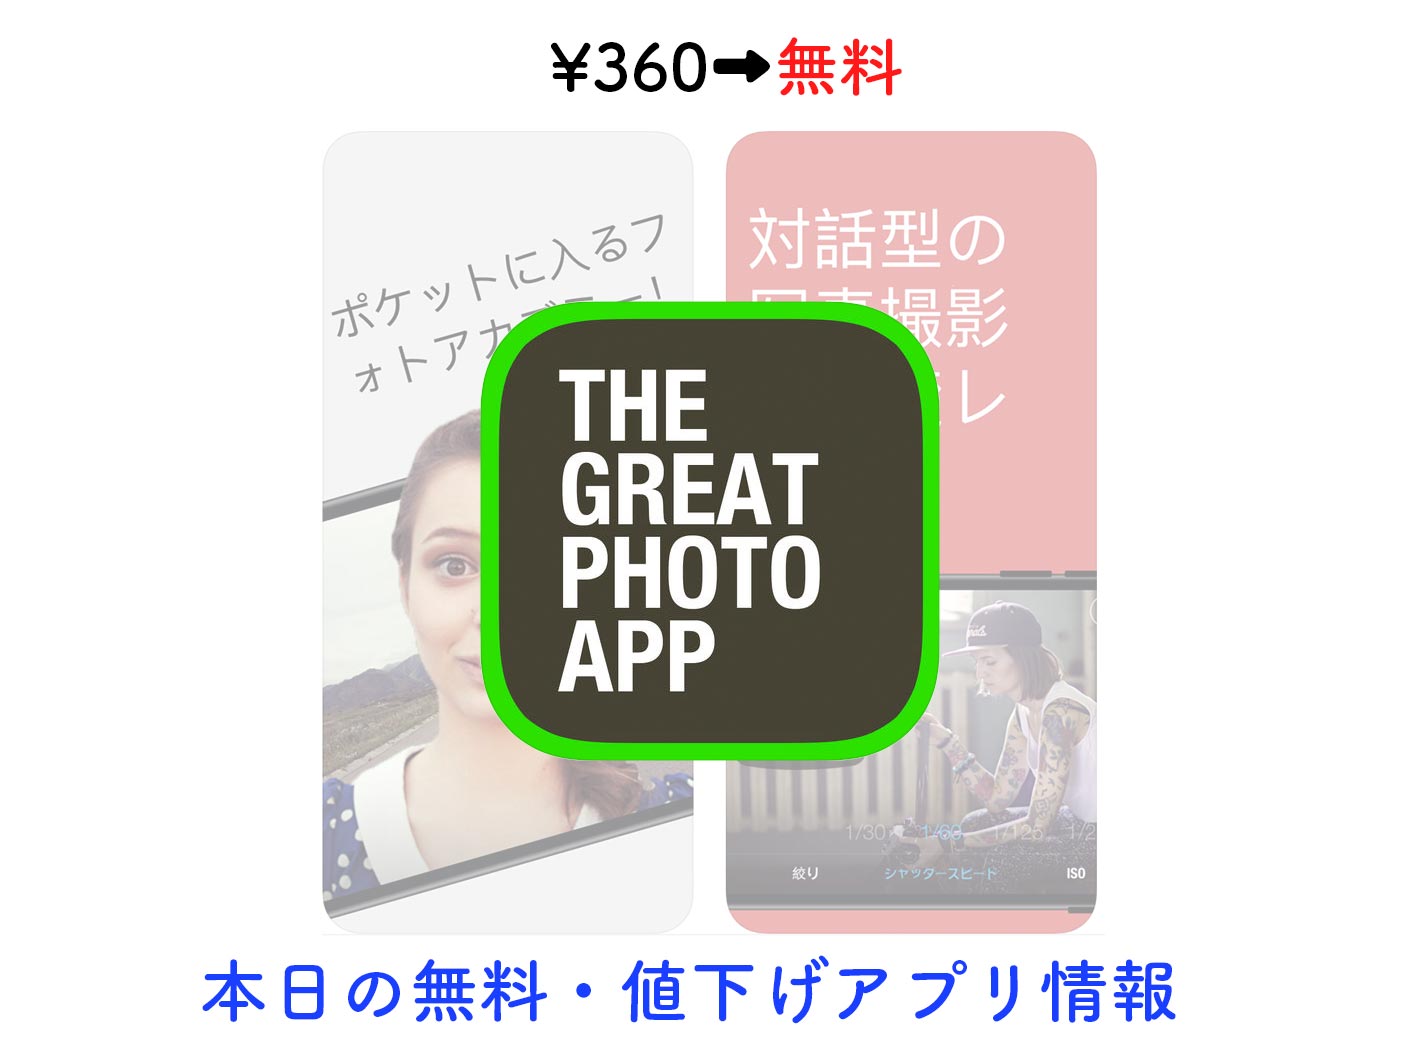 360→無料、写真の撮り方やテクニックを教えてくれる「The Great Photo App」など【7/27】セールアプリ情報